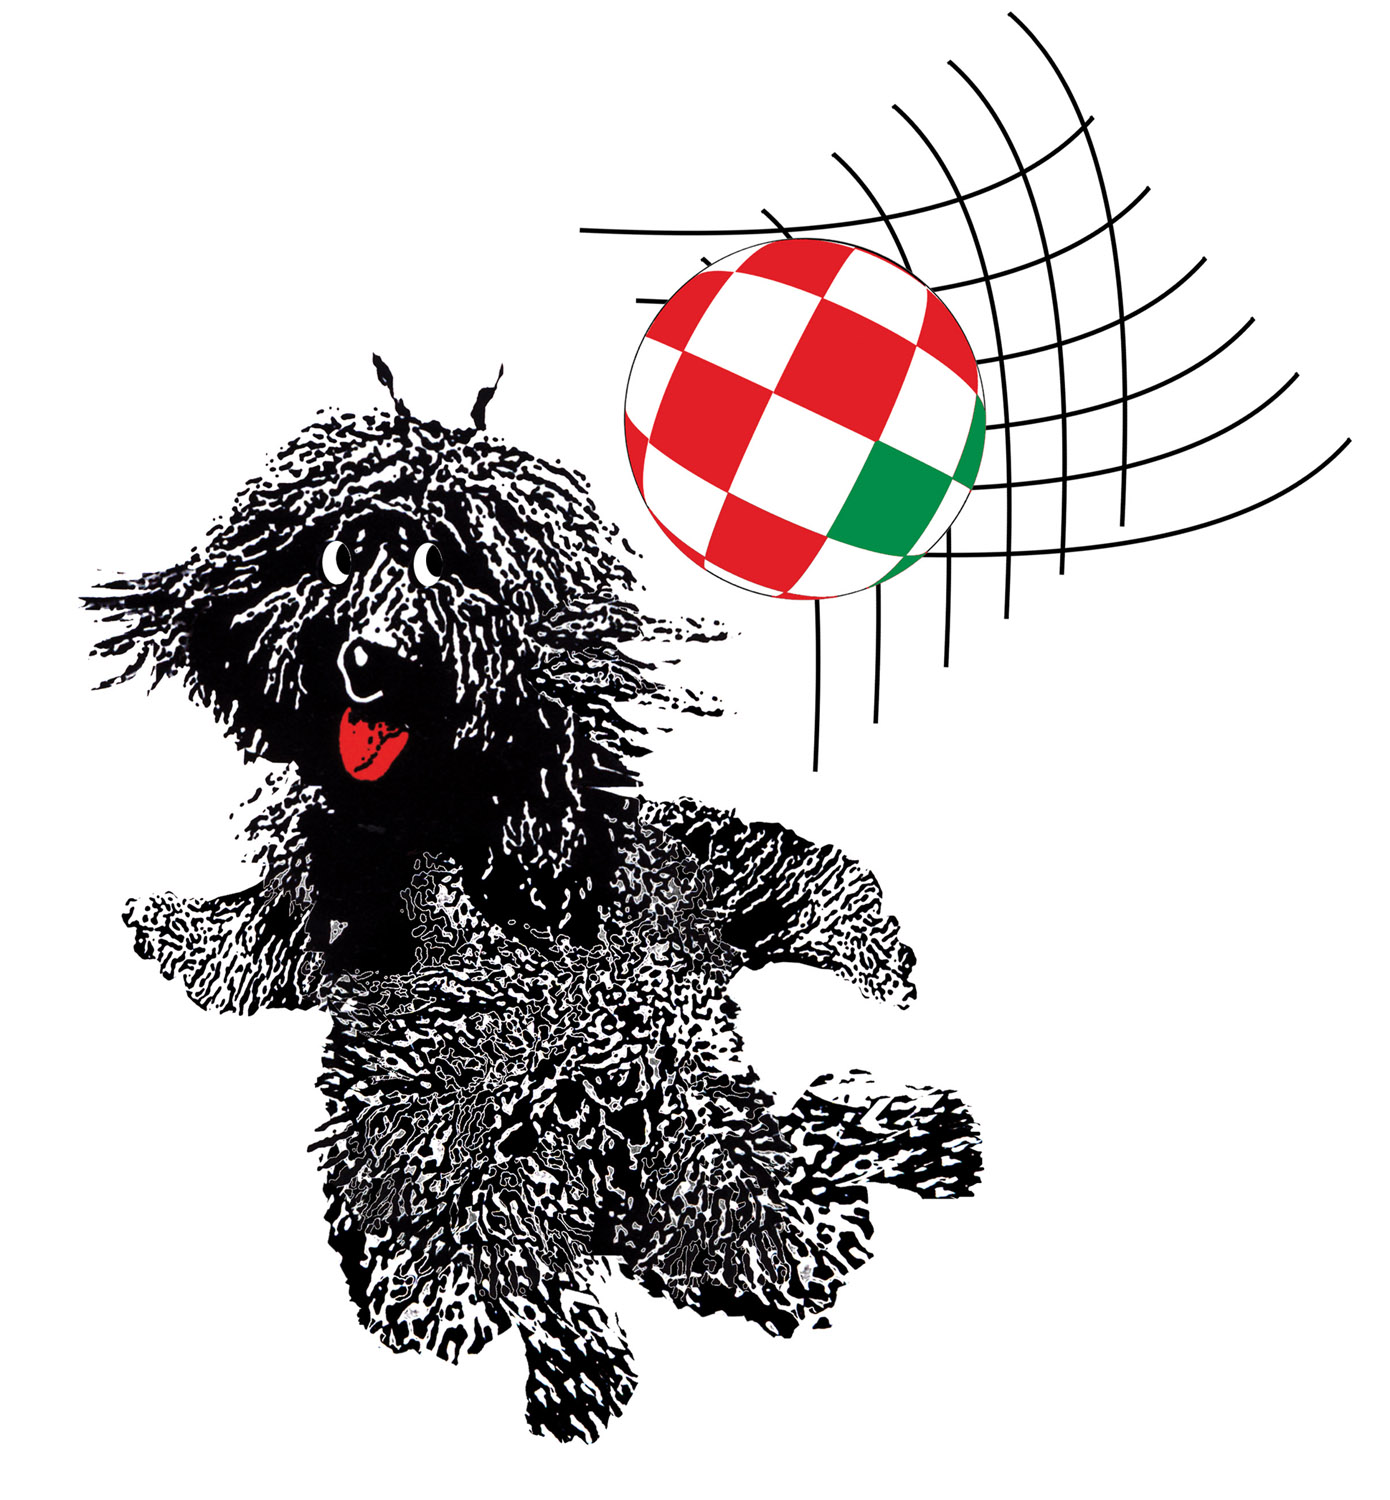 A horvát–magyar labdarúgó Eb tervezett figurája, 2006